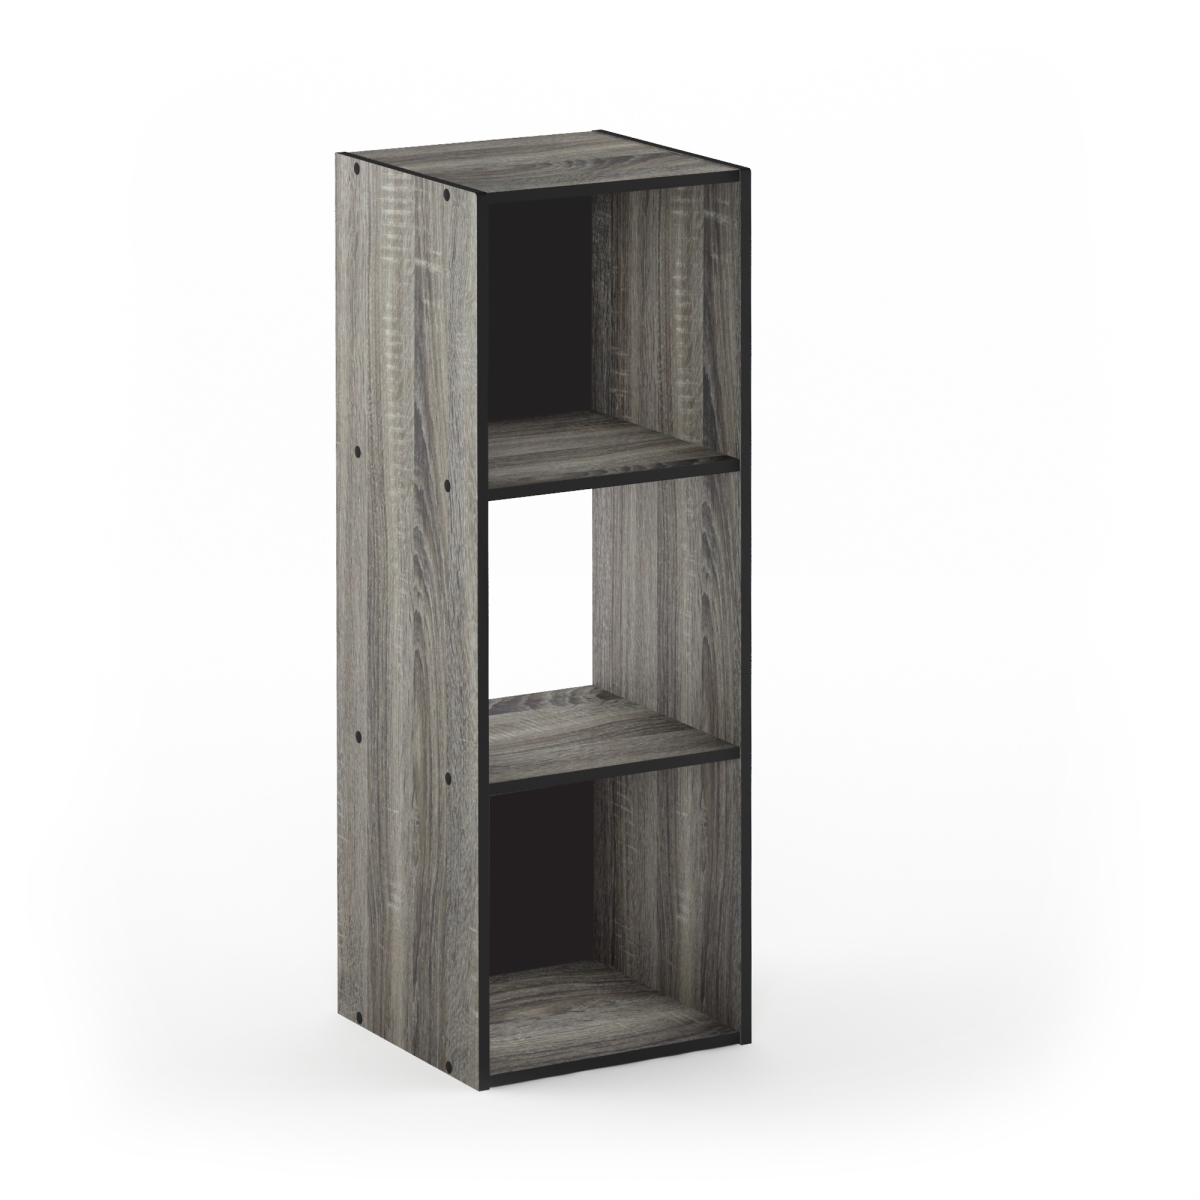 18050gyw 3 X 1 In. Pelli Cubic Storage Cabinet, French Oak Grey & Black